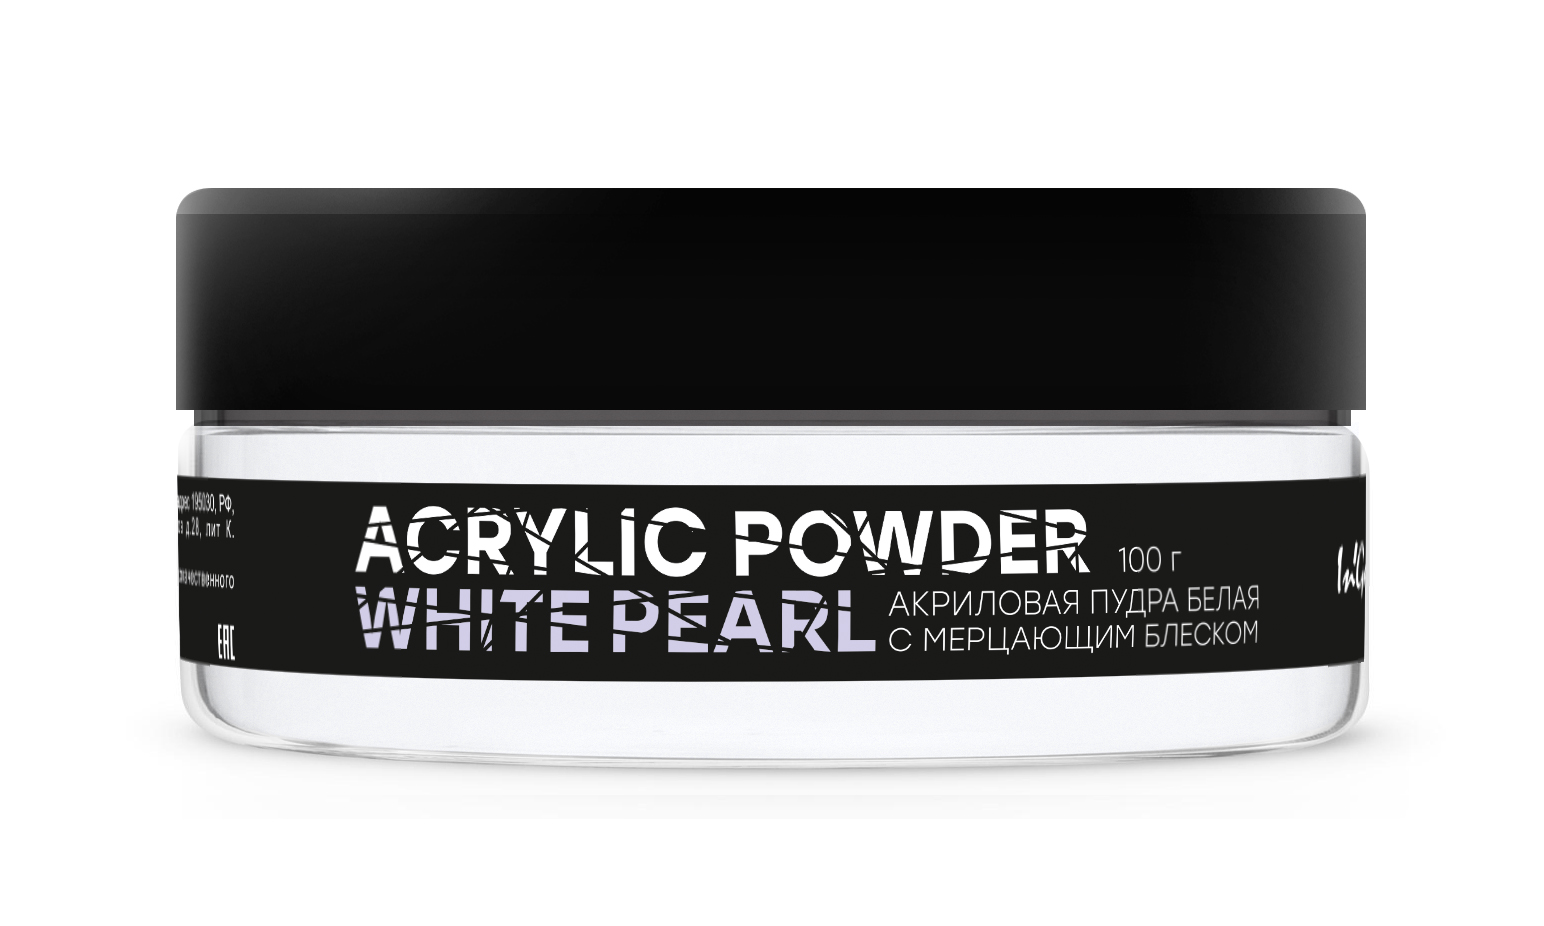 Акриловая пудра белая с мерцанием Acrylic Powder Classic White Pearl, 100 г пудра l’ocean finish face powder фиксирующая рассыпчатая 20 white pearl 30 г